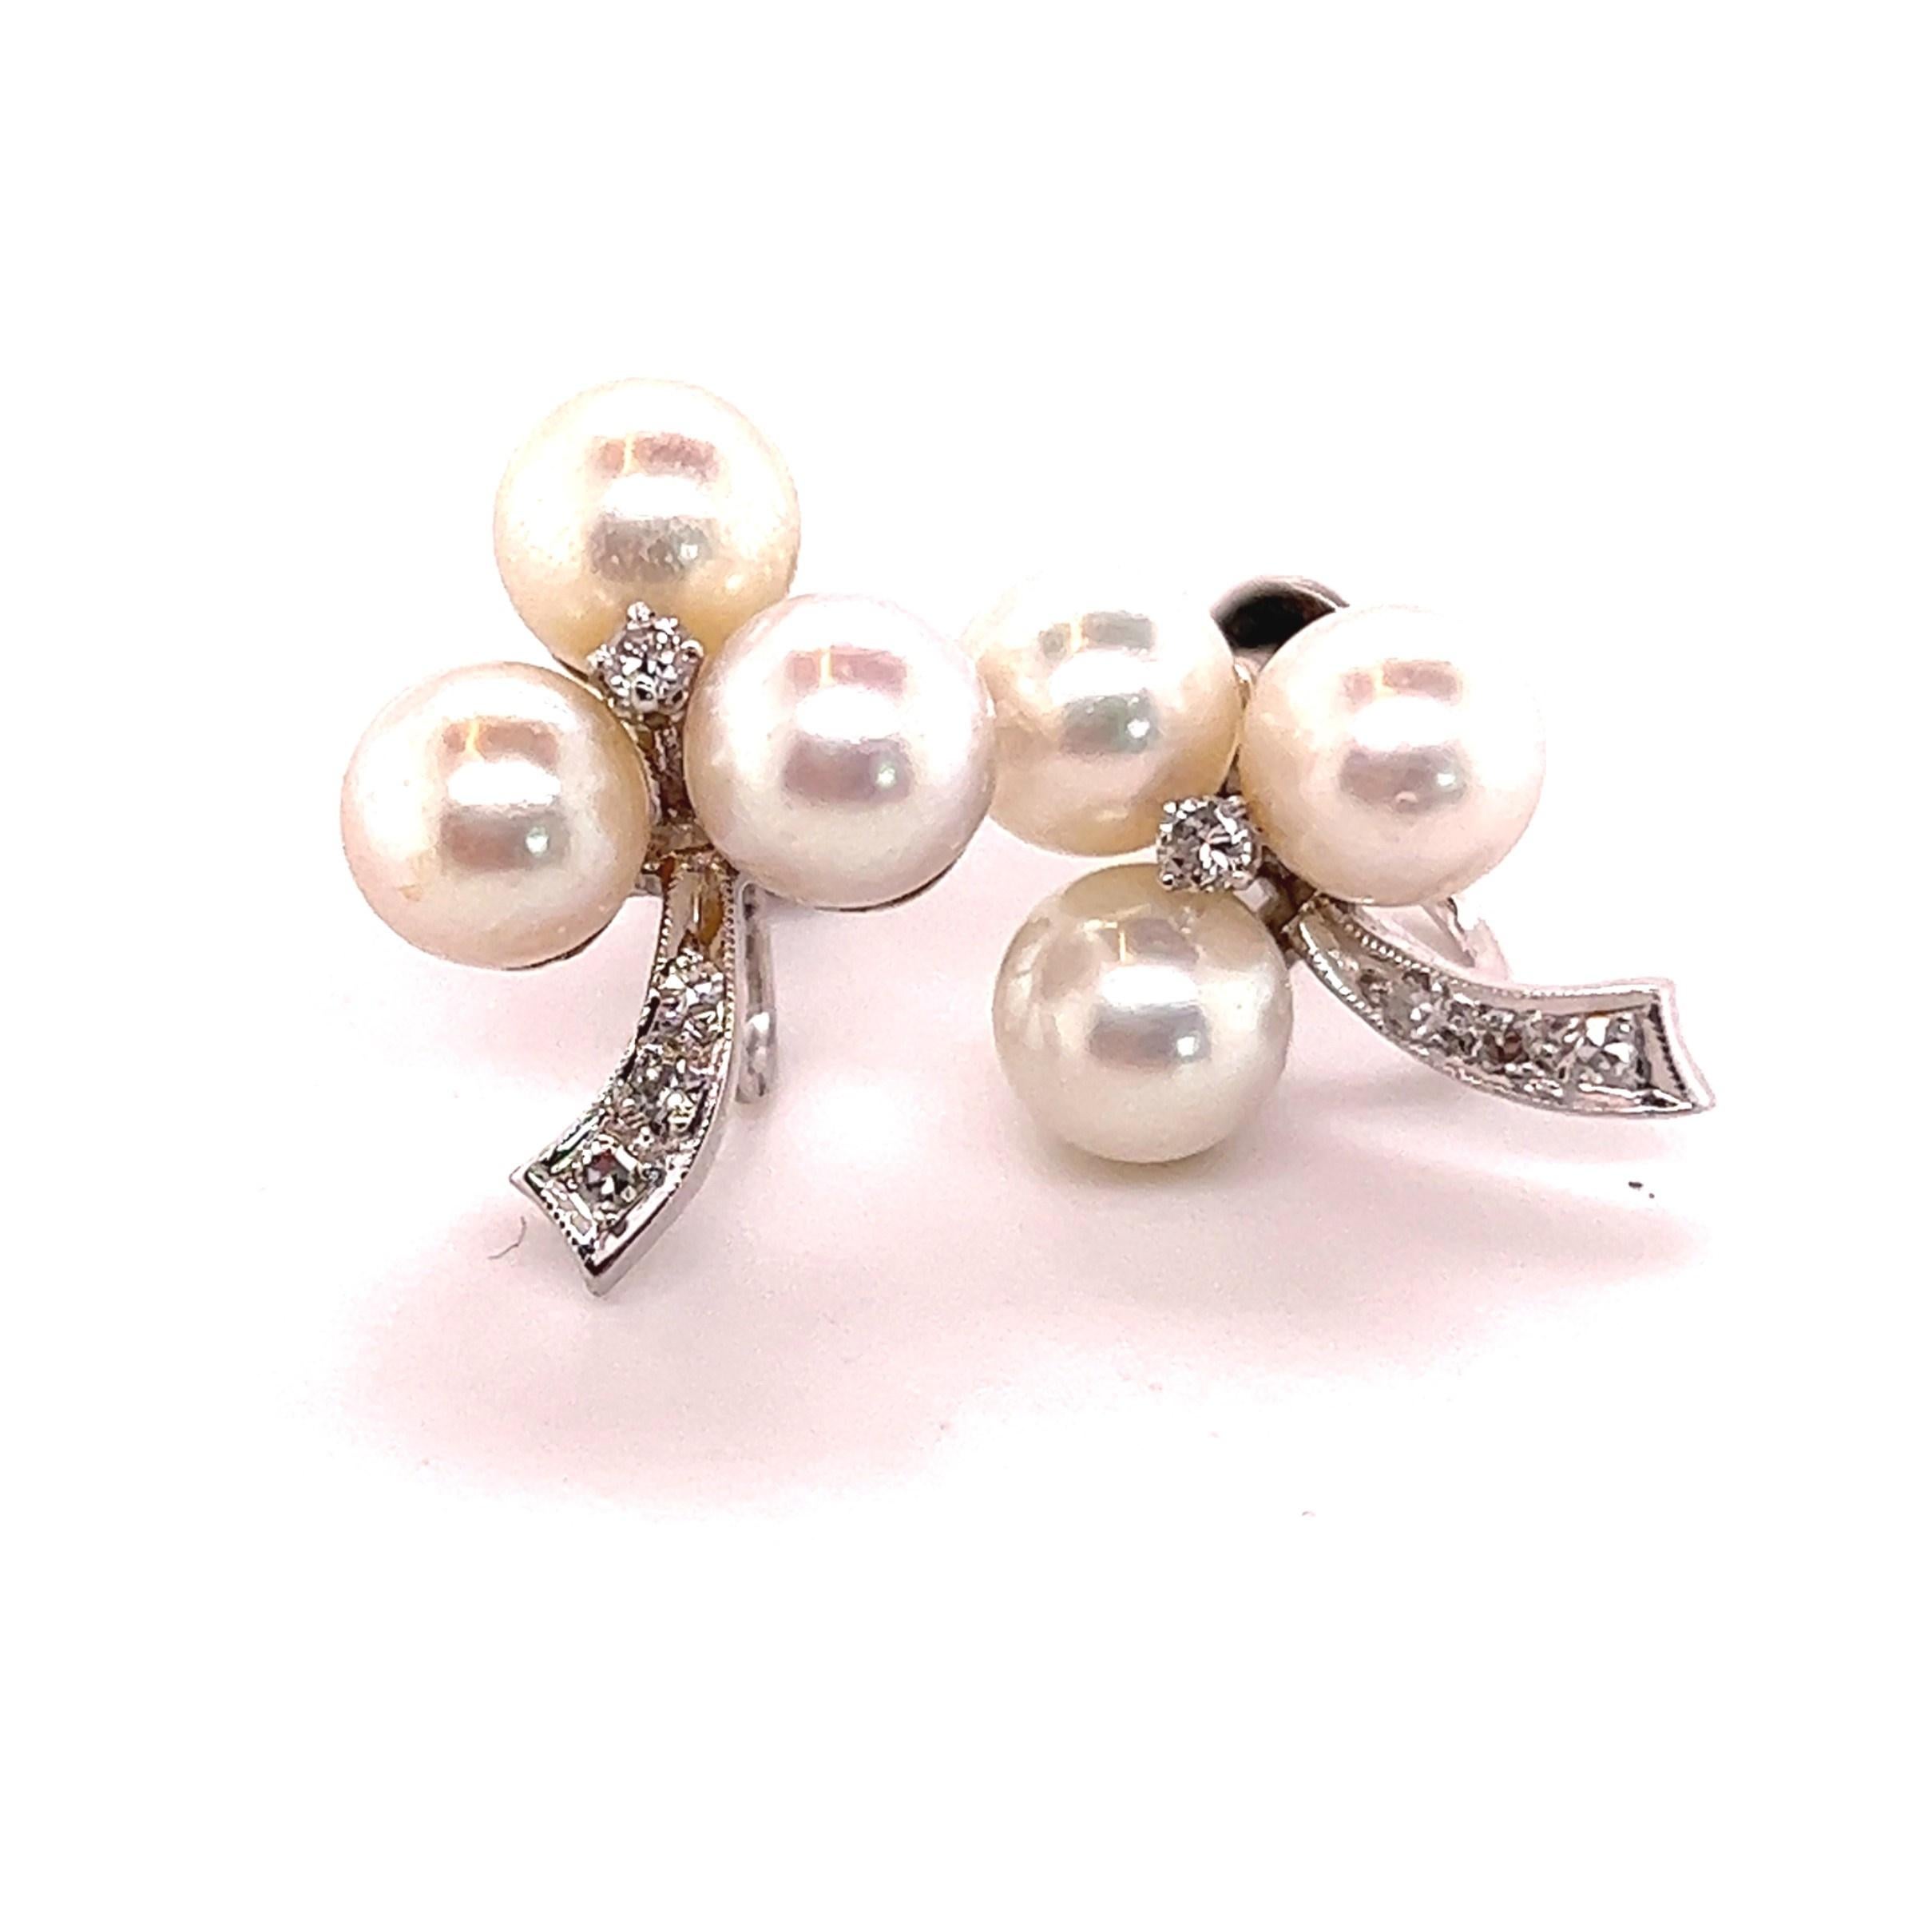 50s style earrings